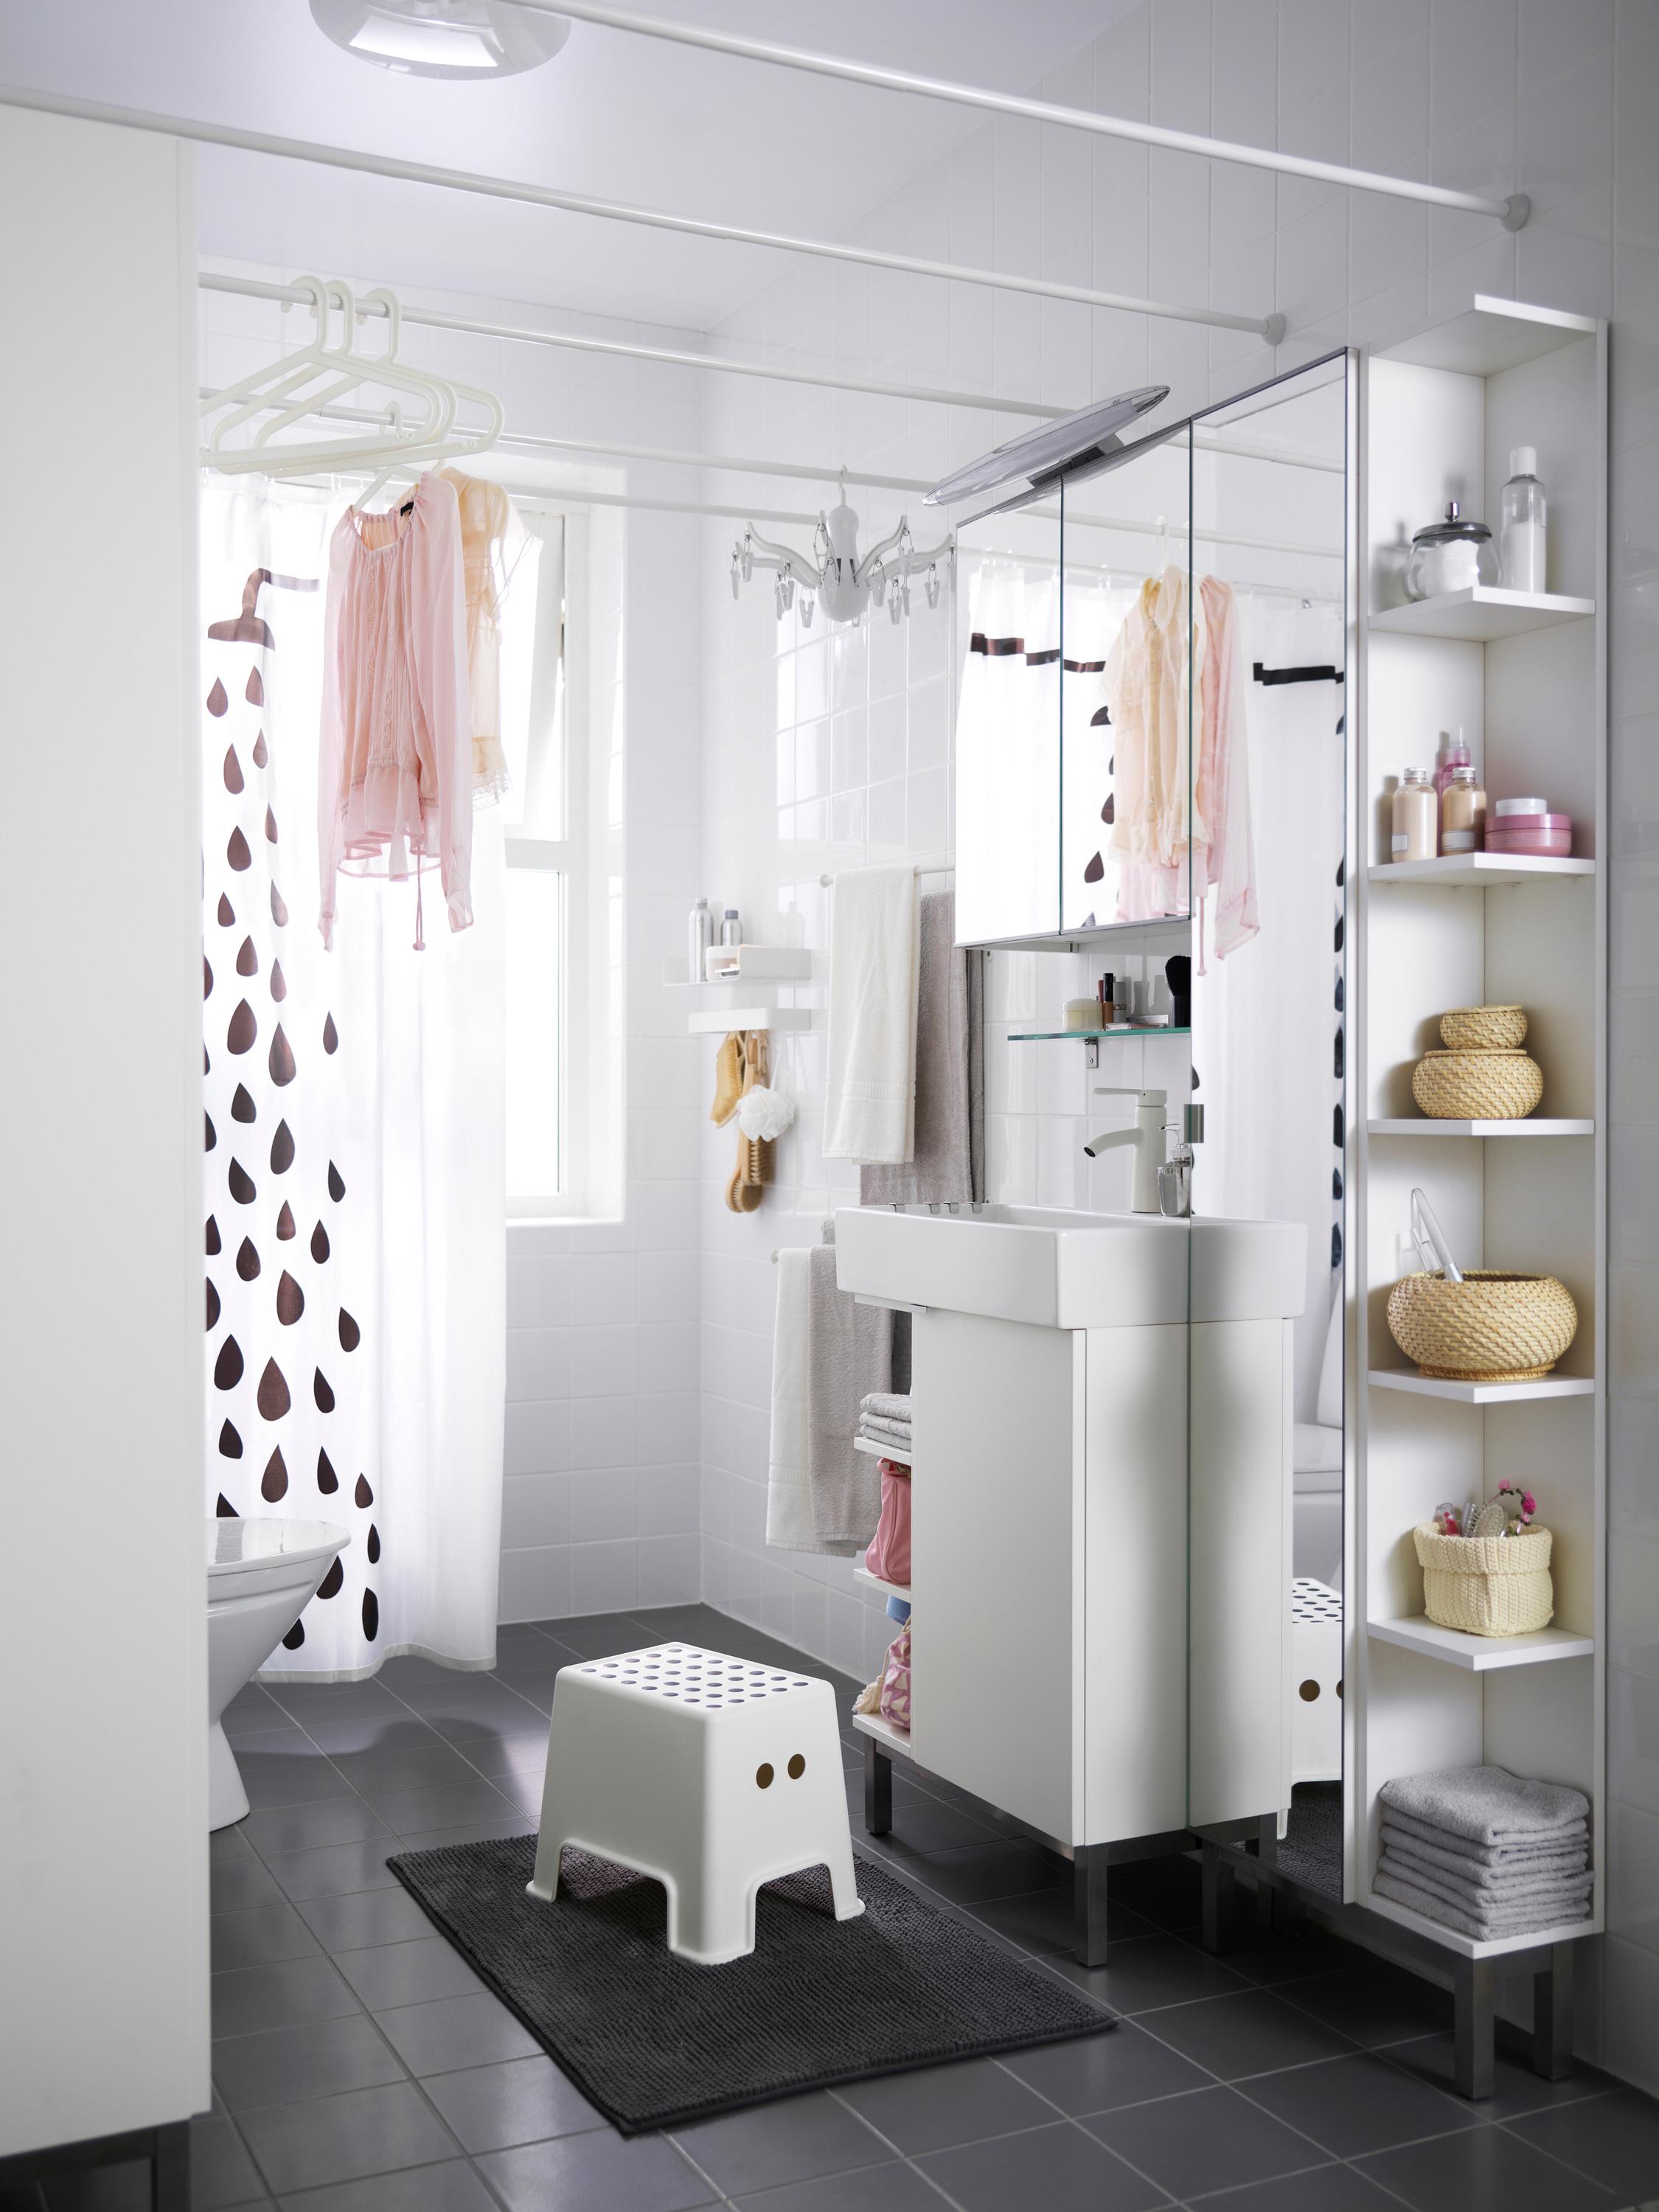 Weißes Eckregal für mehr Stauraum #badutensilie #duschvorhang #ikea #spiegelschrank #grauefliesen #eckregal #badezimmereinrichtung #kleinesbadezimmer ©Inter IKEA Systems B.V.